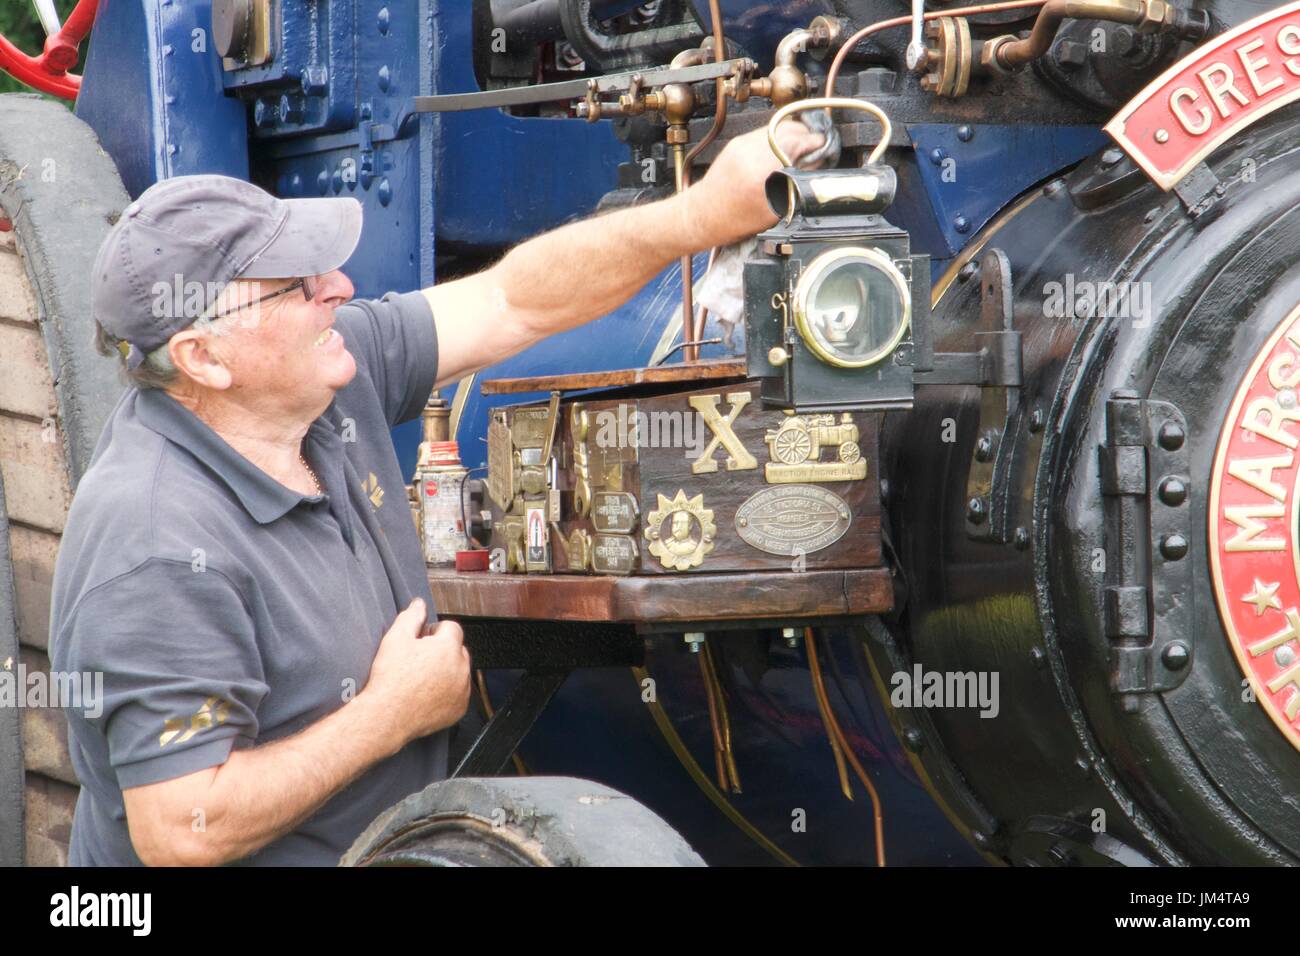 Uomo di effettuare interventi di manutenzione sul motore di trazione a Masham fiera del vapore, Masham, North Yorkshire, Regno Unito Foto Stock